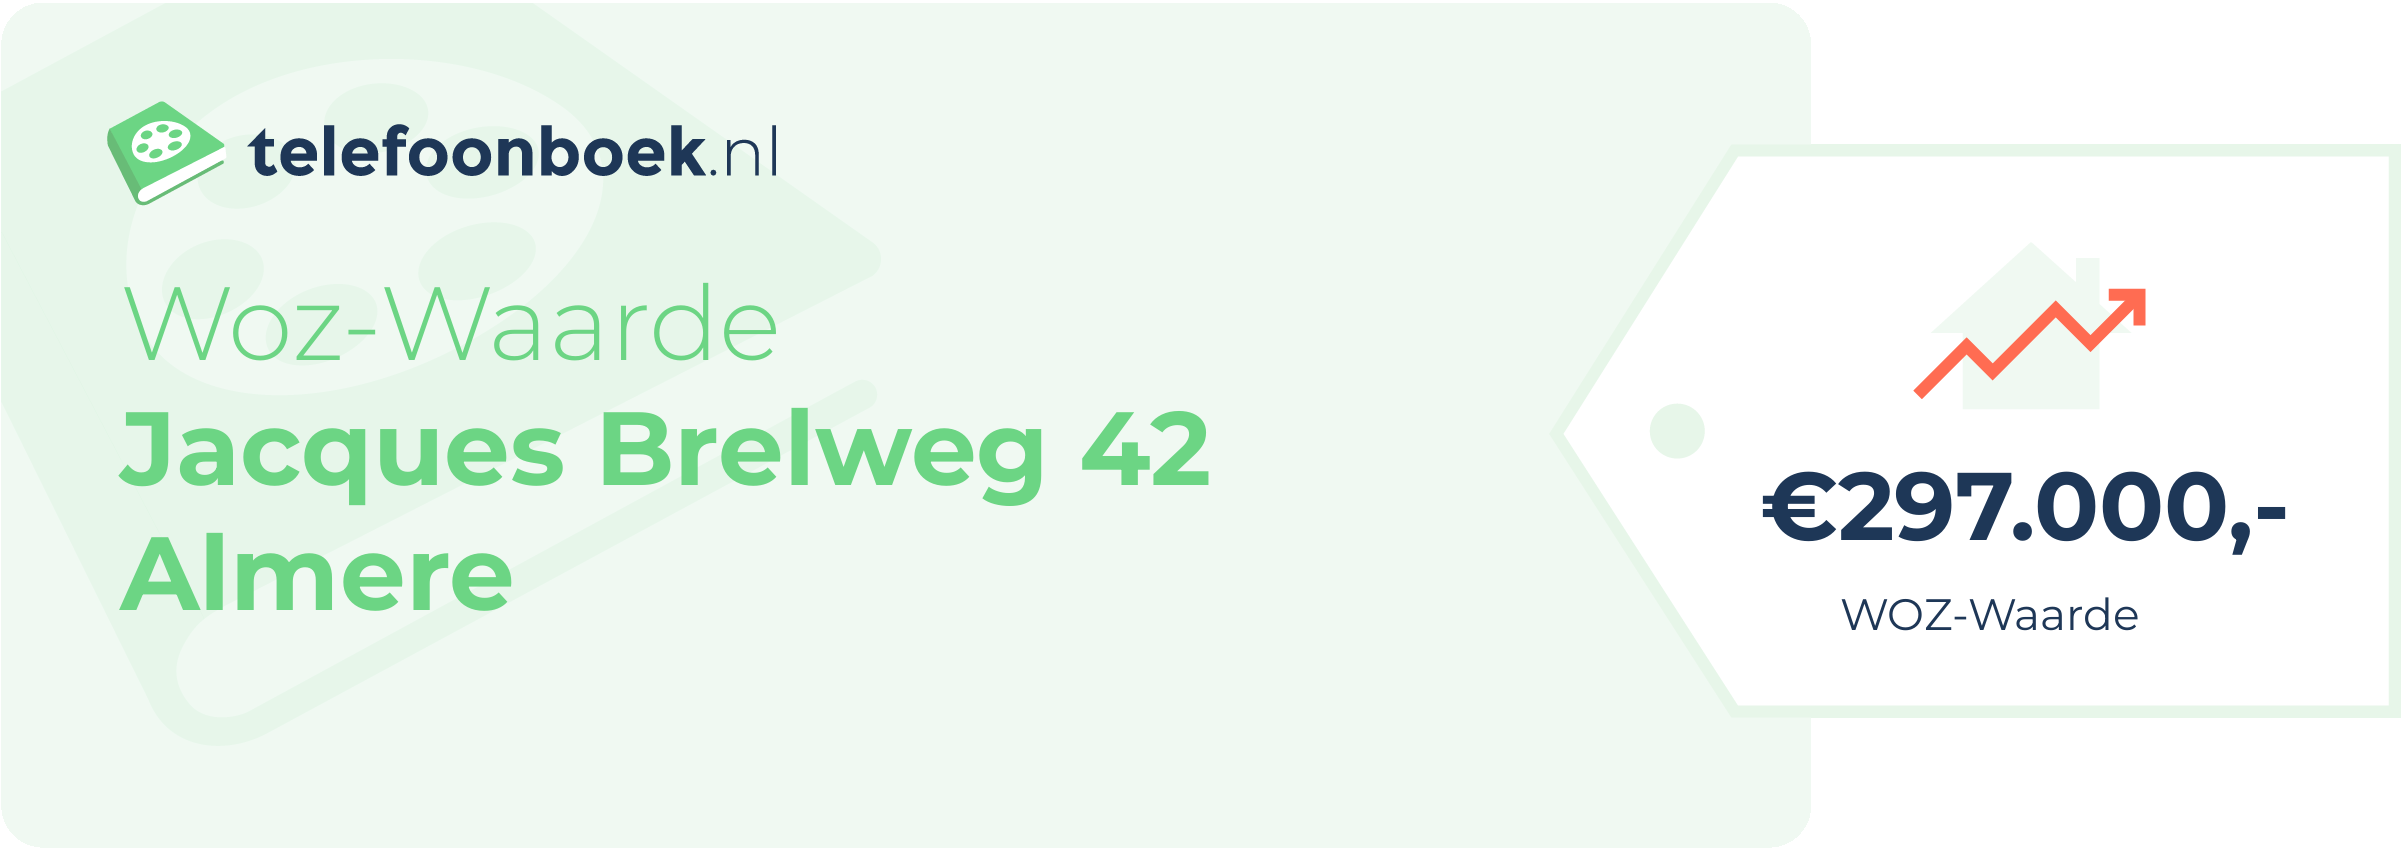 WOZ-waarde Jacques Brelweg 42 Almere